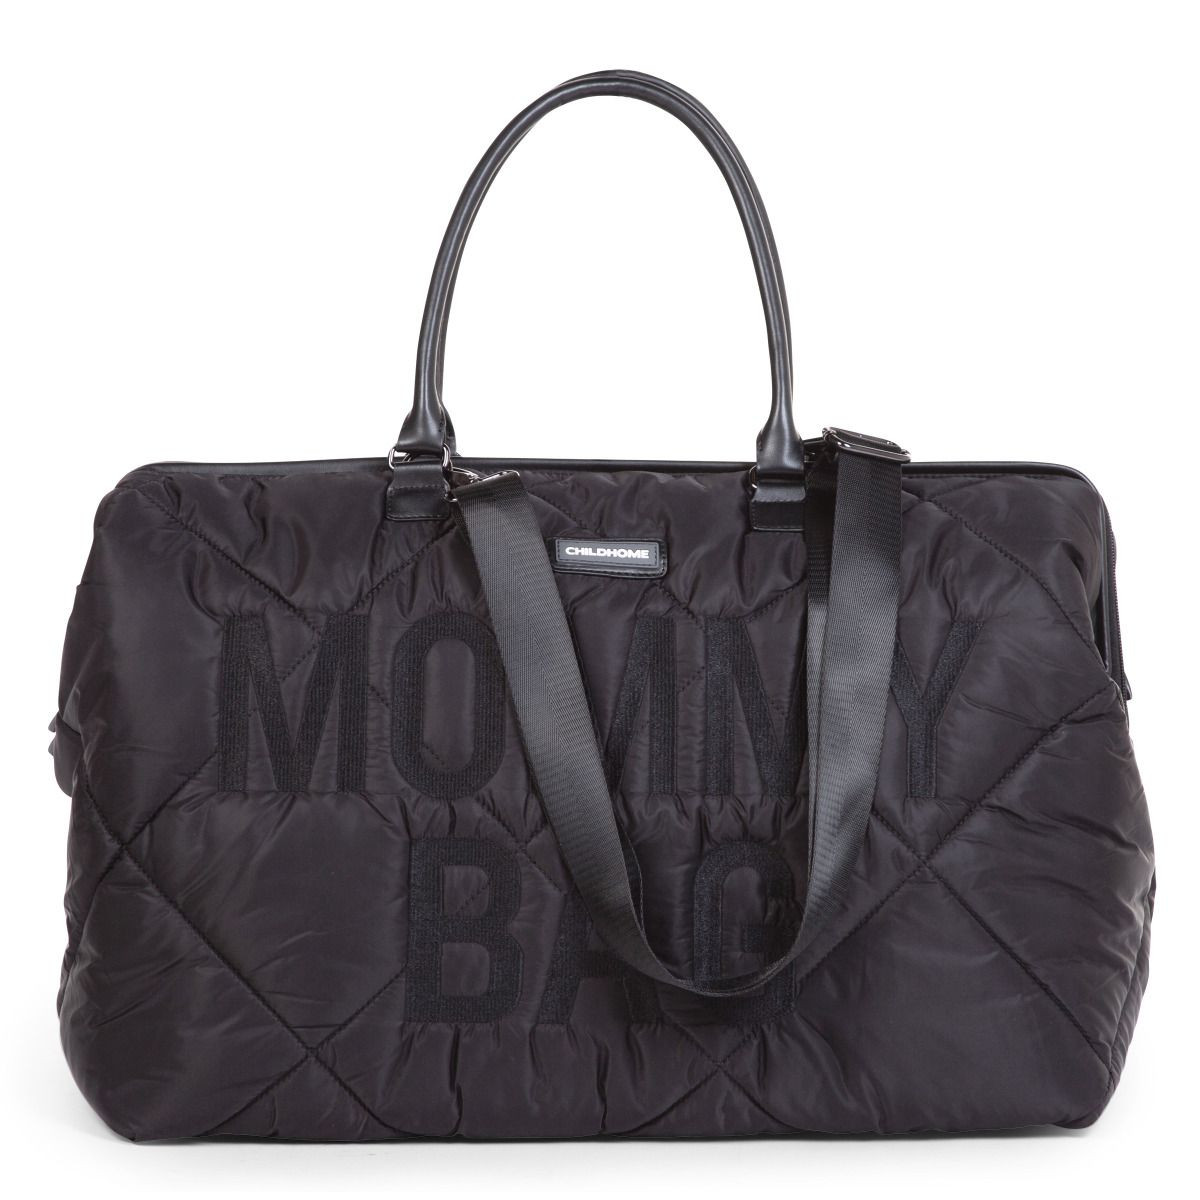 Bolso Mommy Bag de Childhome, incluye una correa de transporte, también se puede llevar fácilmente sobre el hombro.